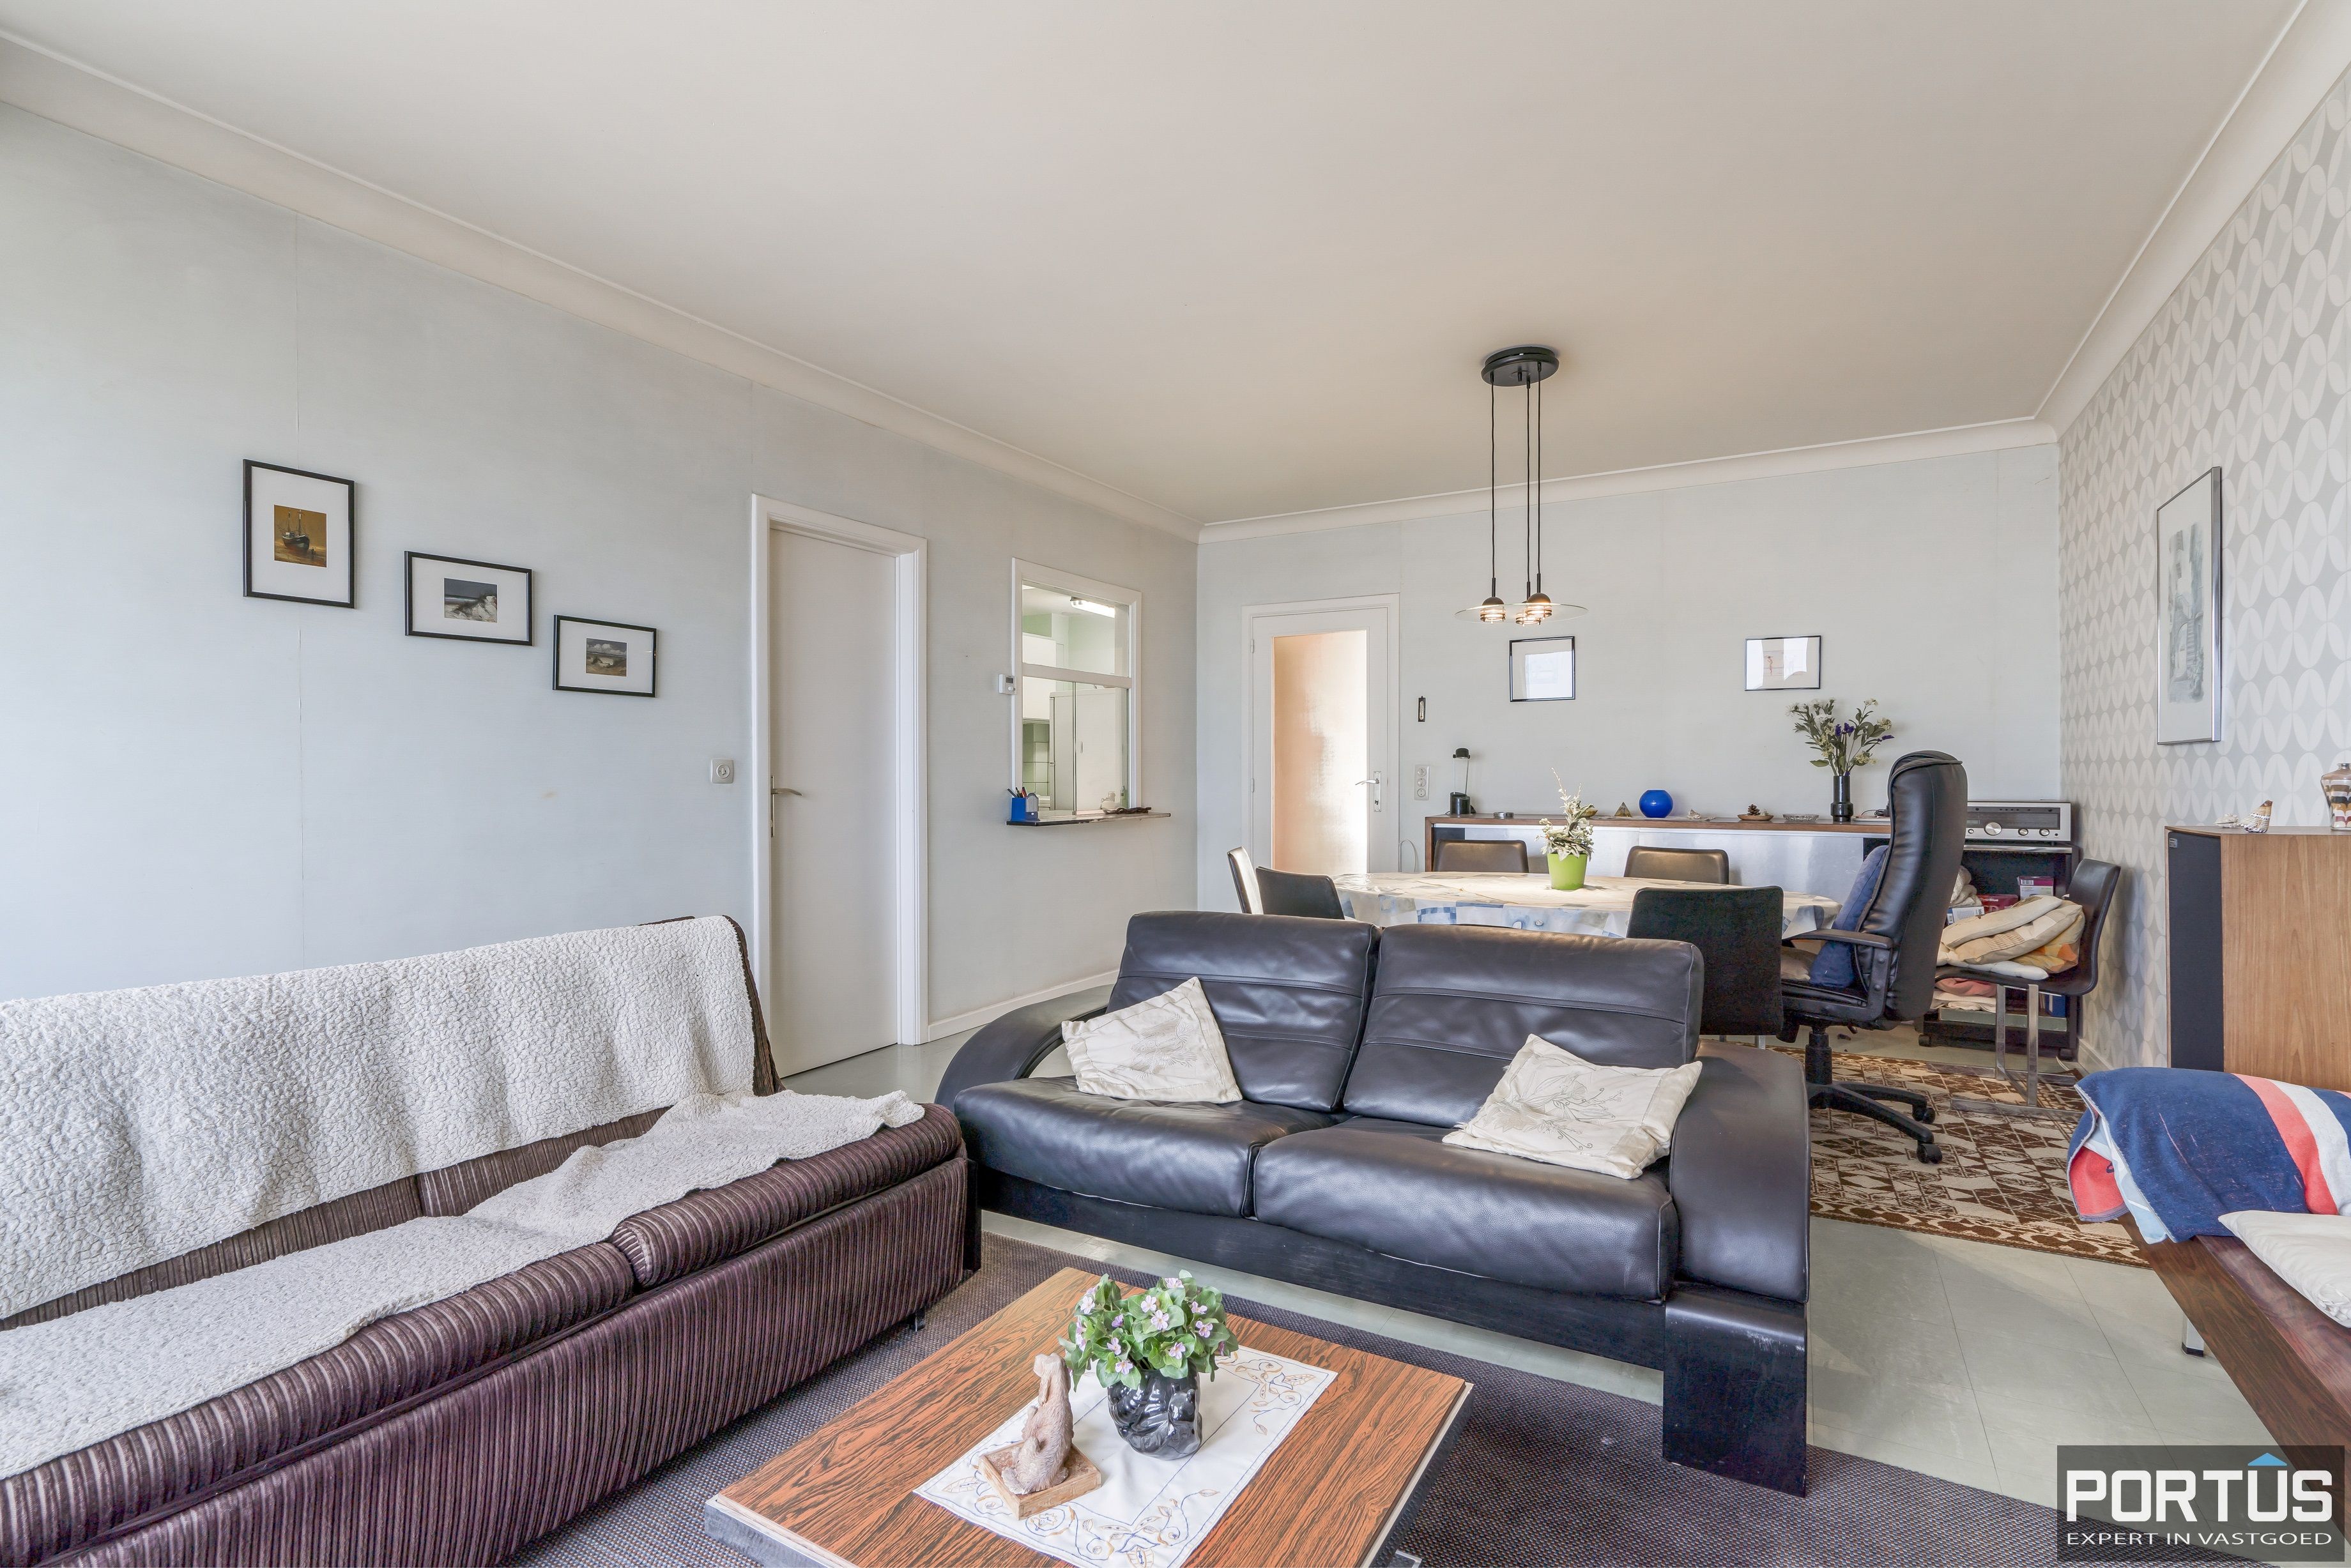 Appartement met 3 slaapkamers en frontaal zeezicht te koop te Nieuwpoort-Bad - 14263